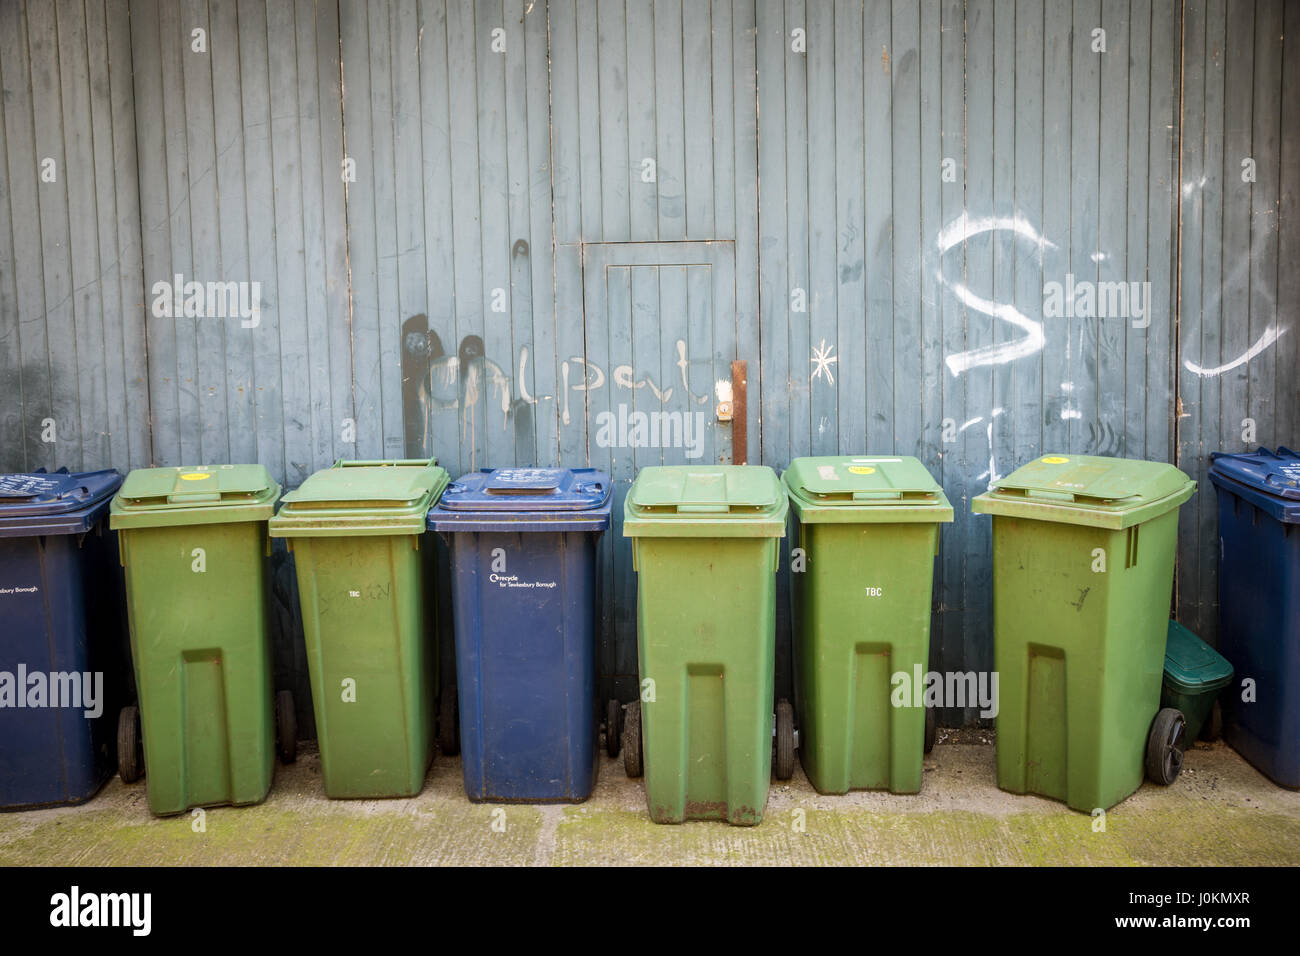 Reihe von Mülltonnen oder Mülltonnen Müll in einer Seitenstraße in der Stadt Stockfoto